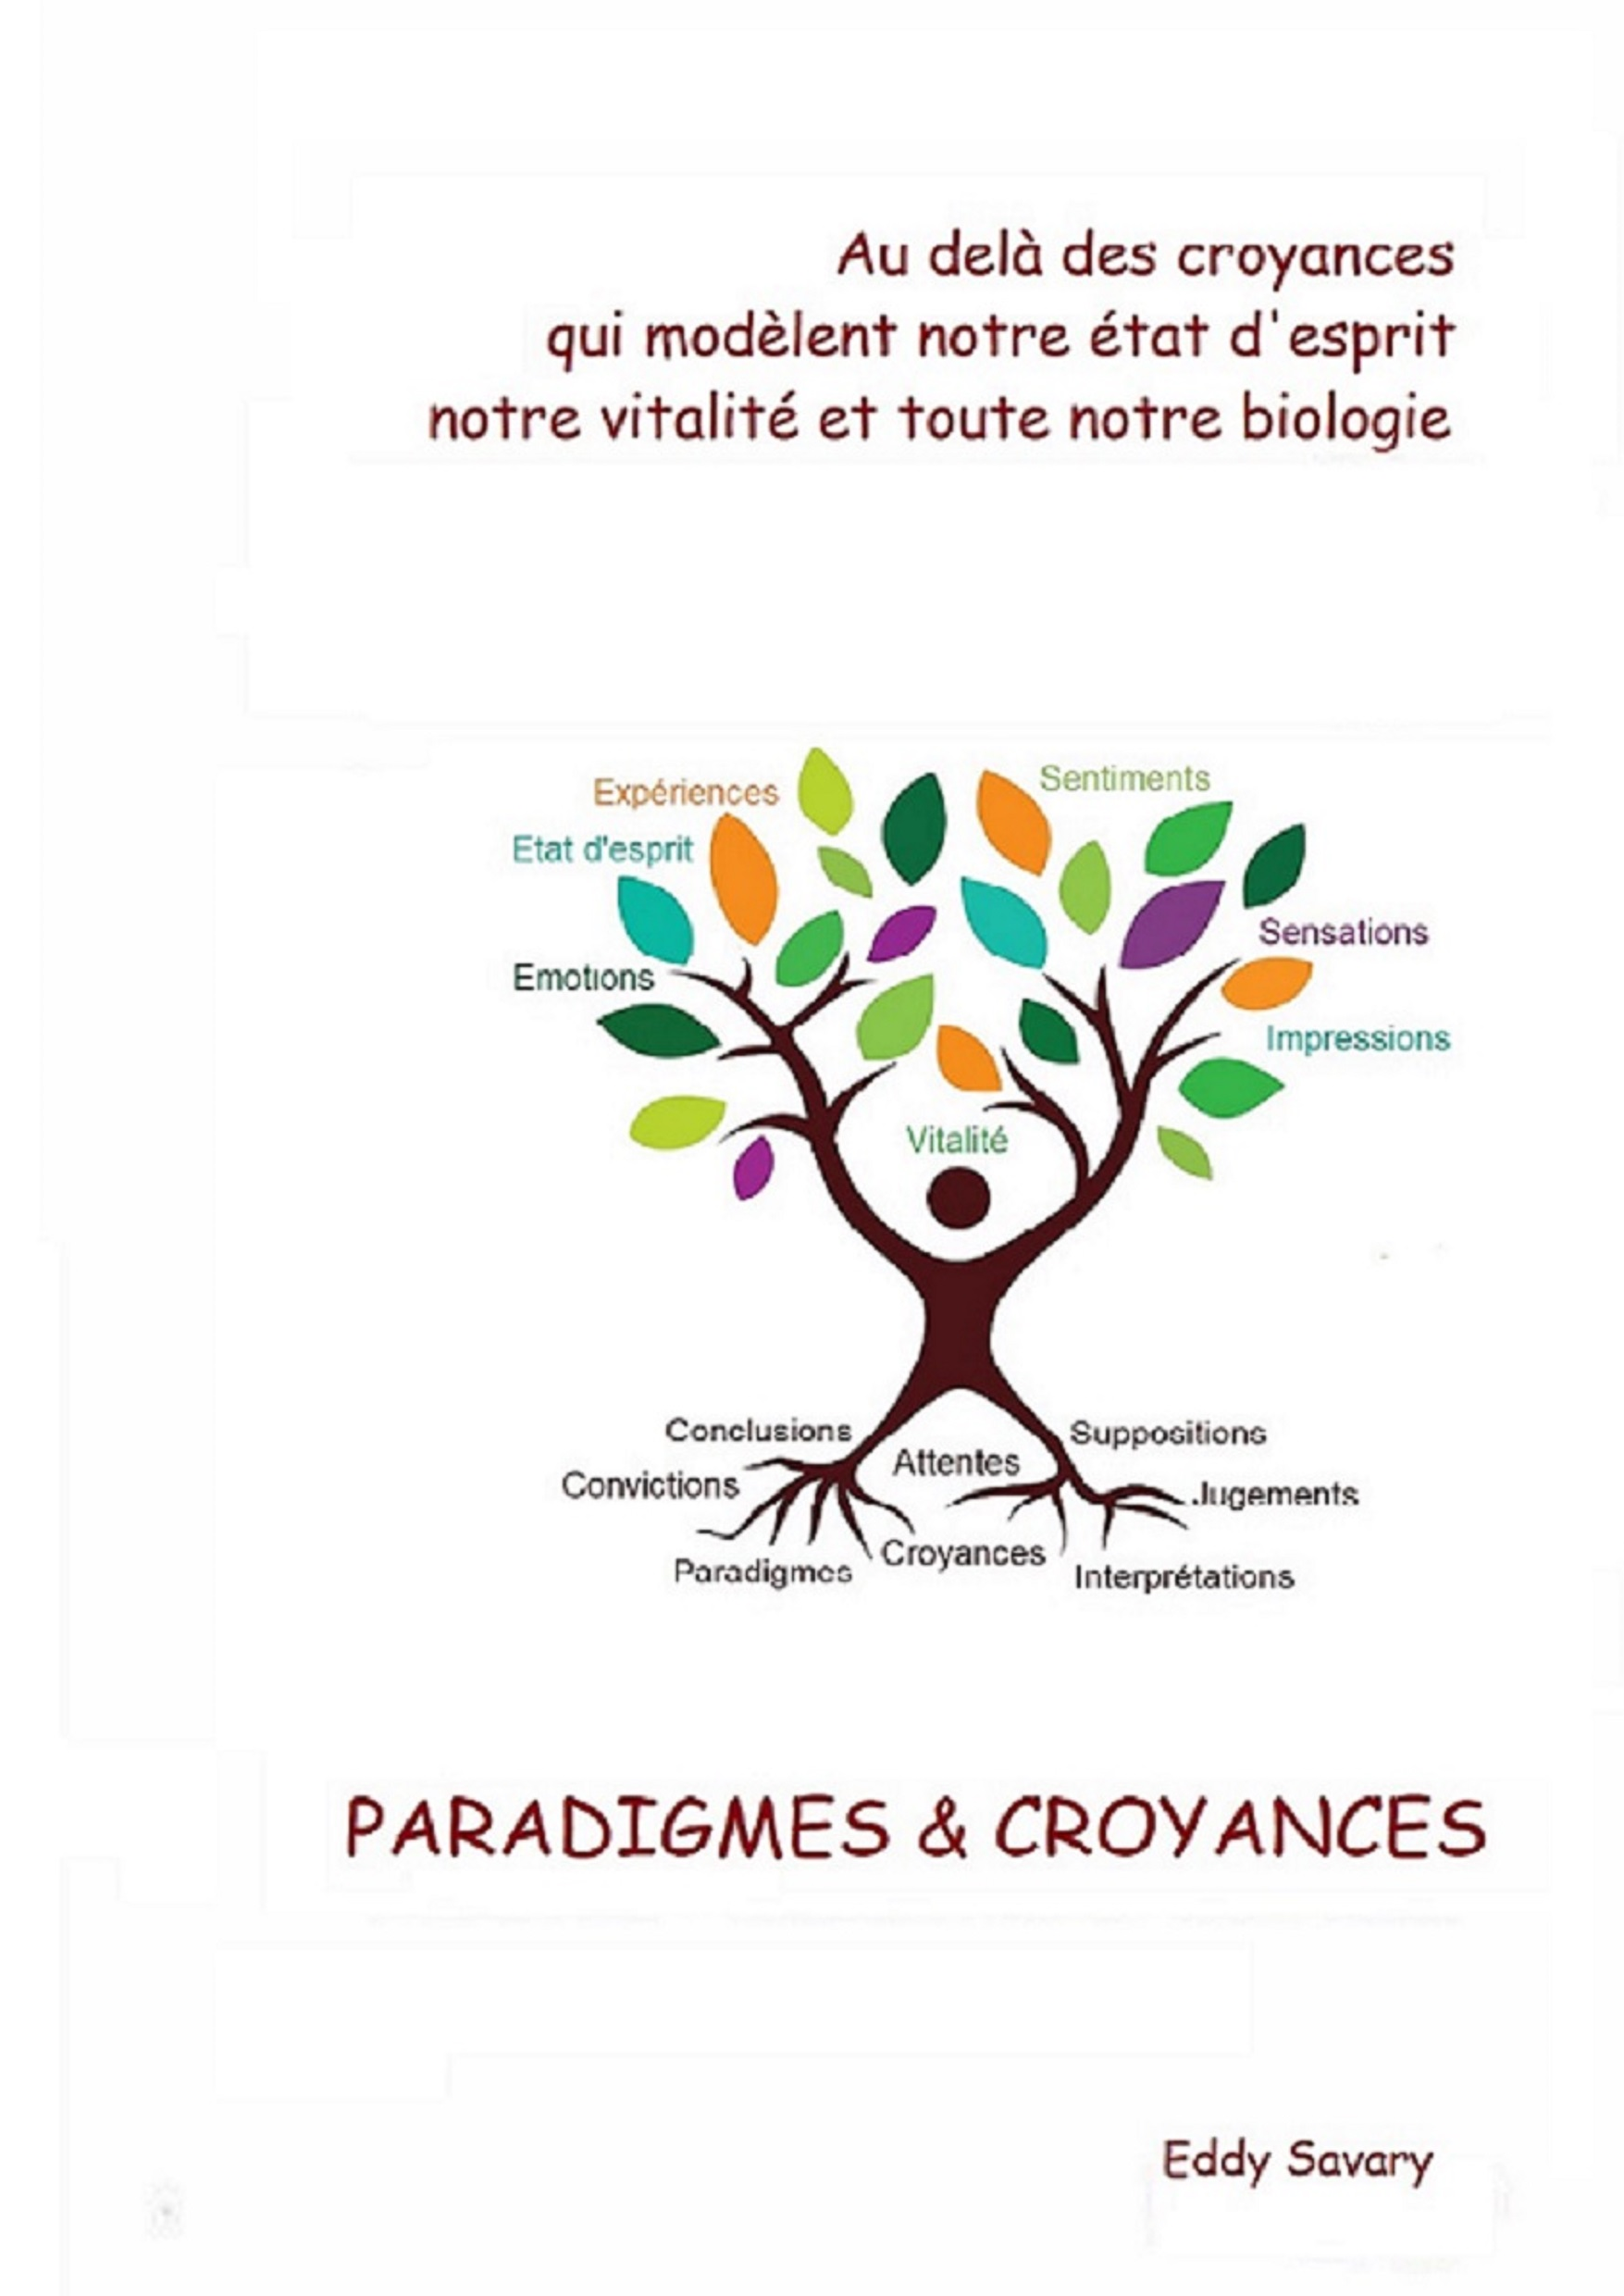 Paradigmes & Croyances